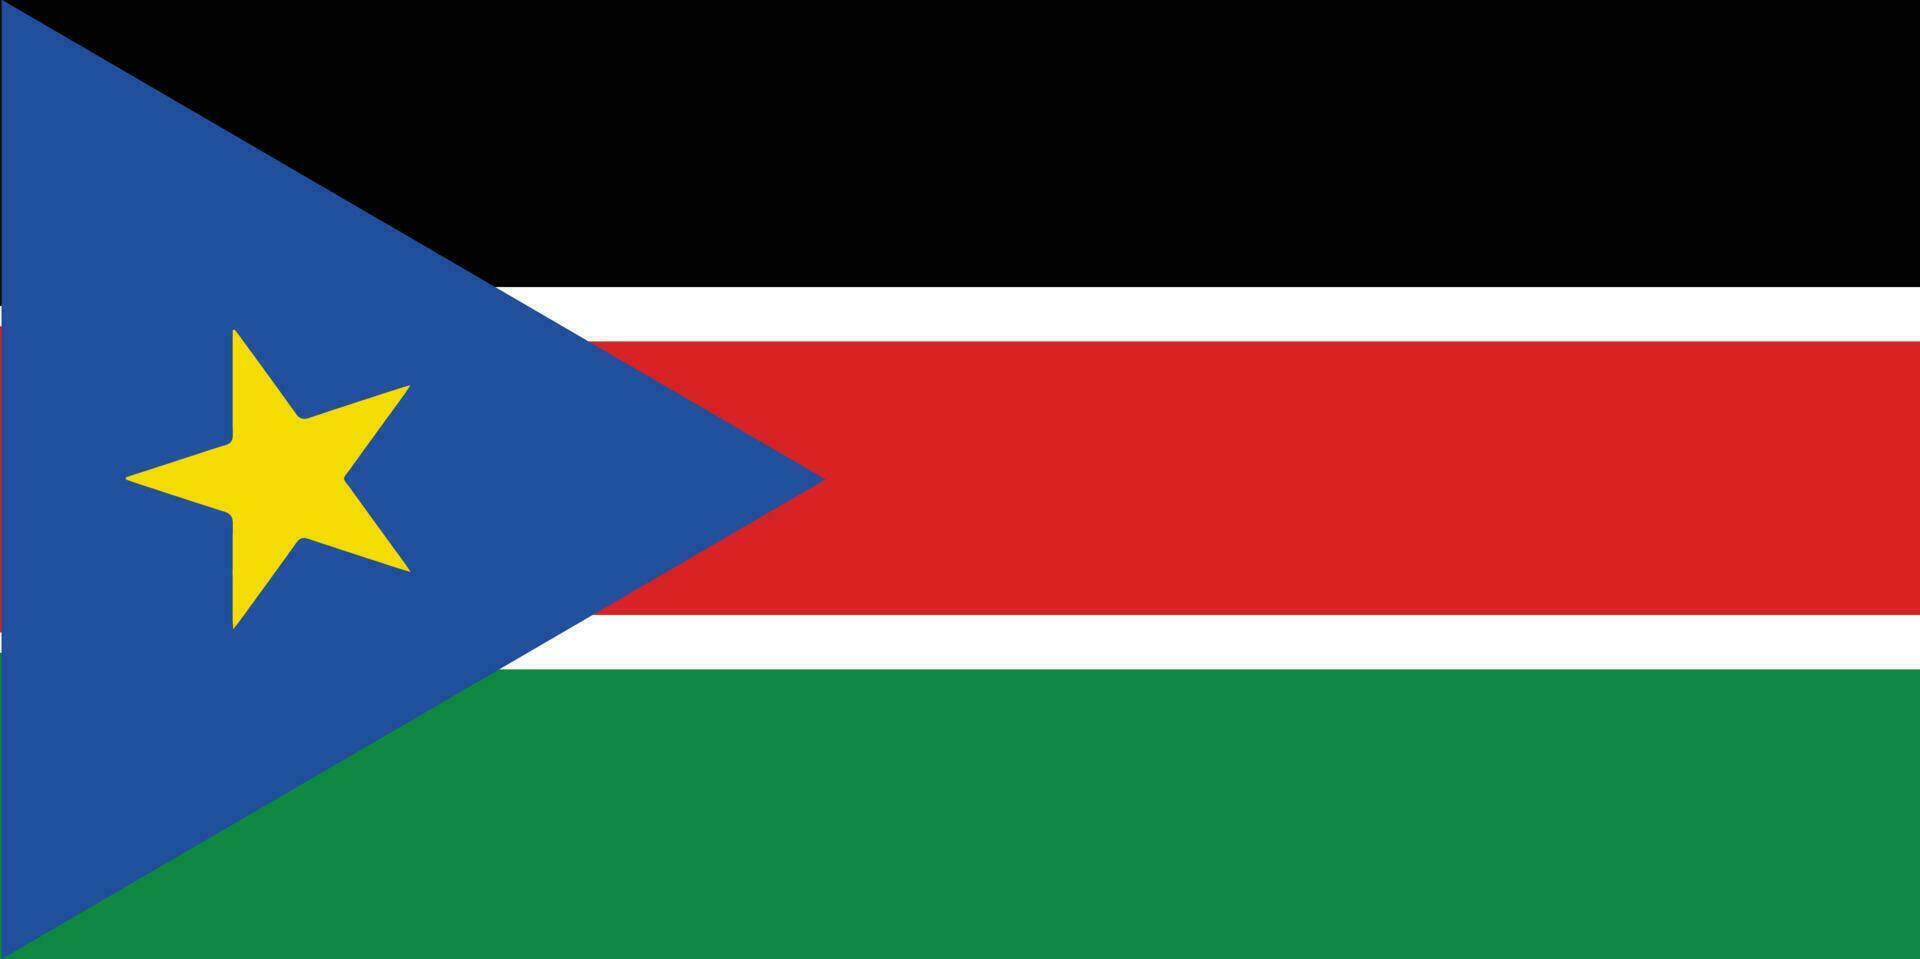 bandeira do sul nacional do sudão bandeira do sul Sudão vetor